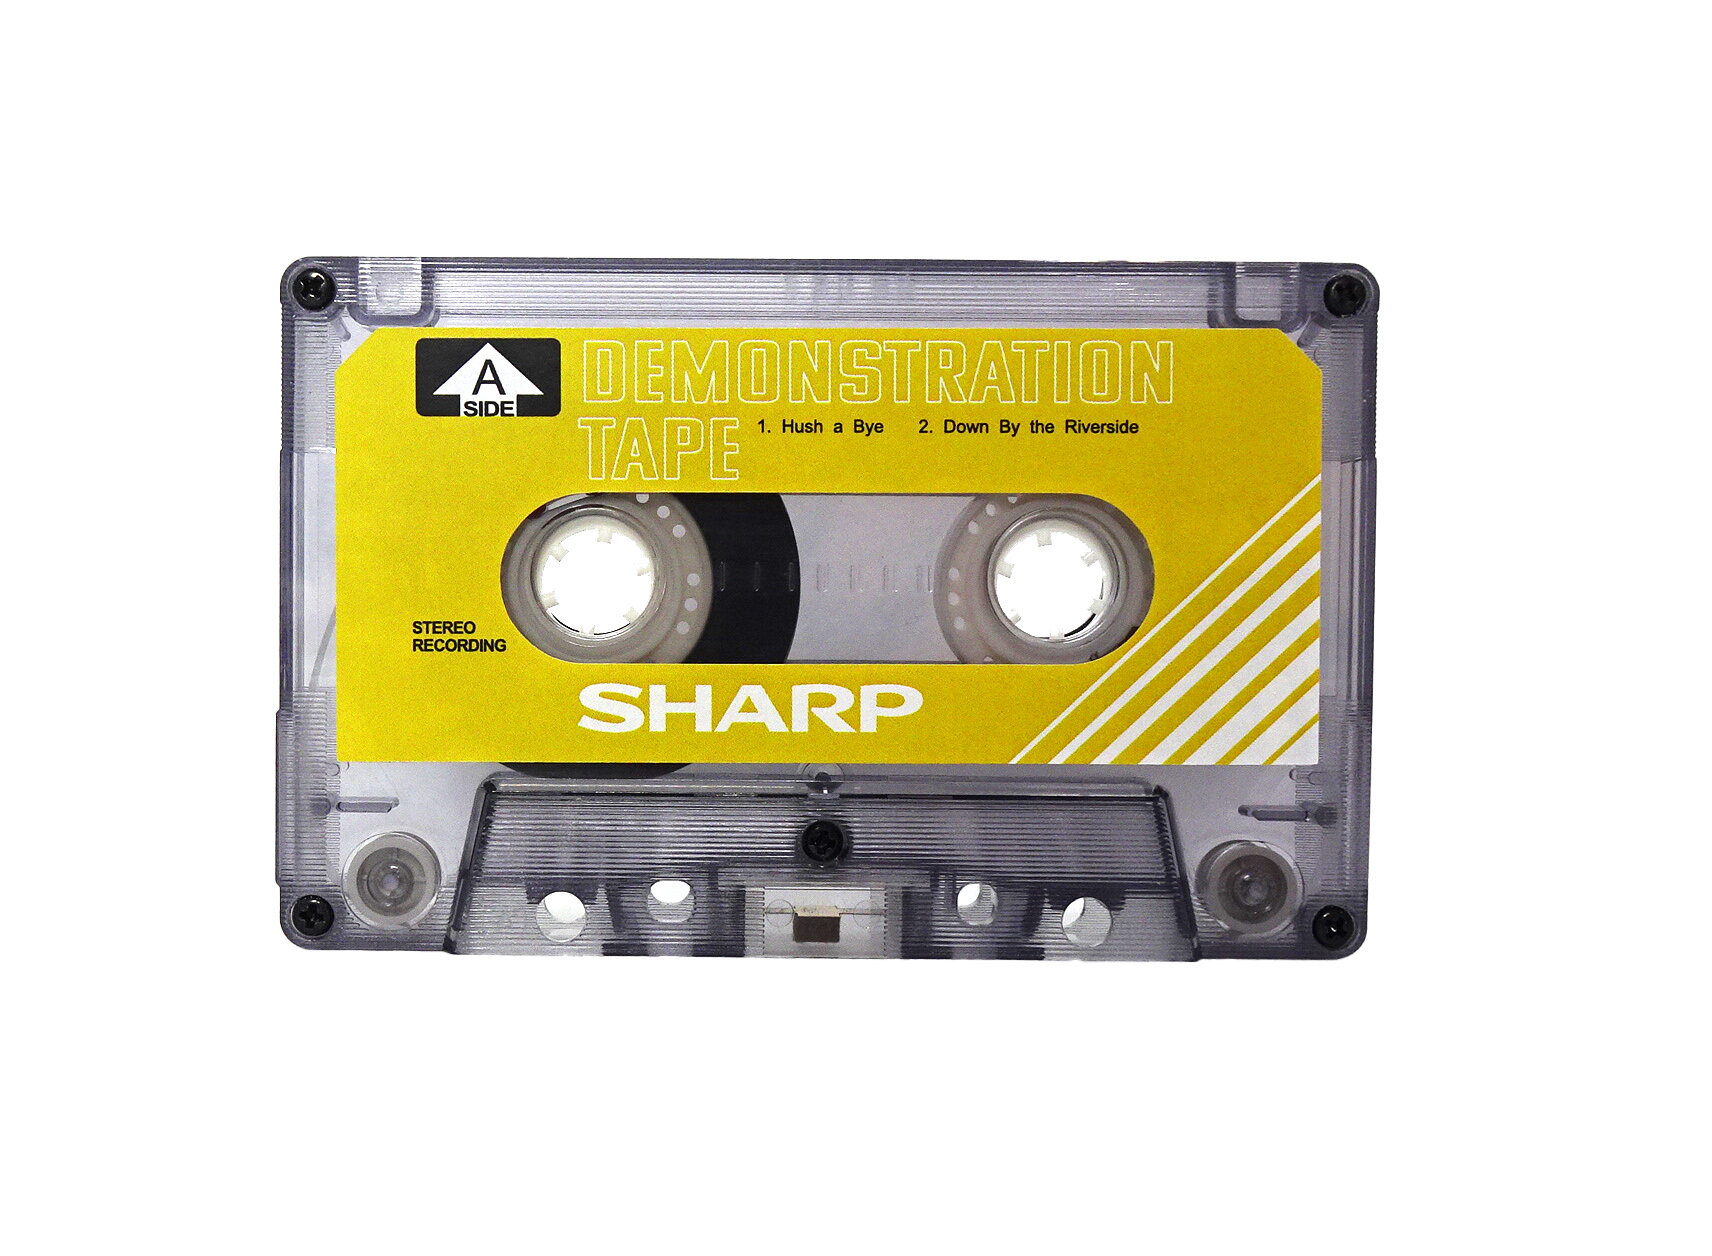 Аудиокассета SHARP демонстрационная жёлтая 30 минутная для магнитофонов SHARP. Бланк.